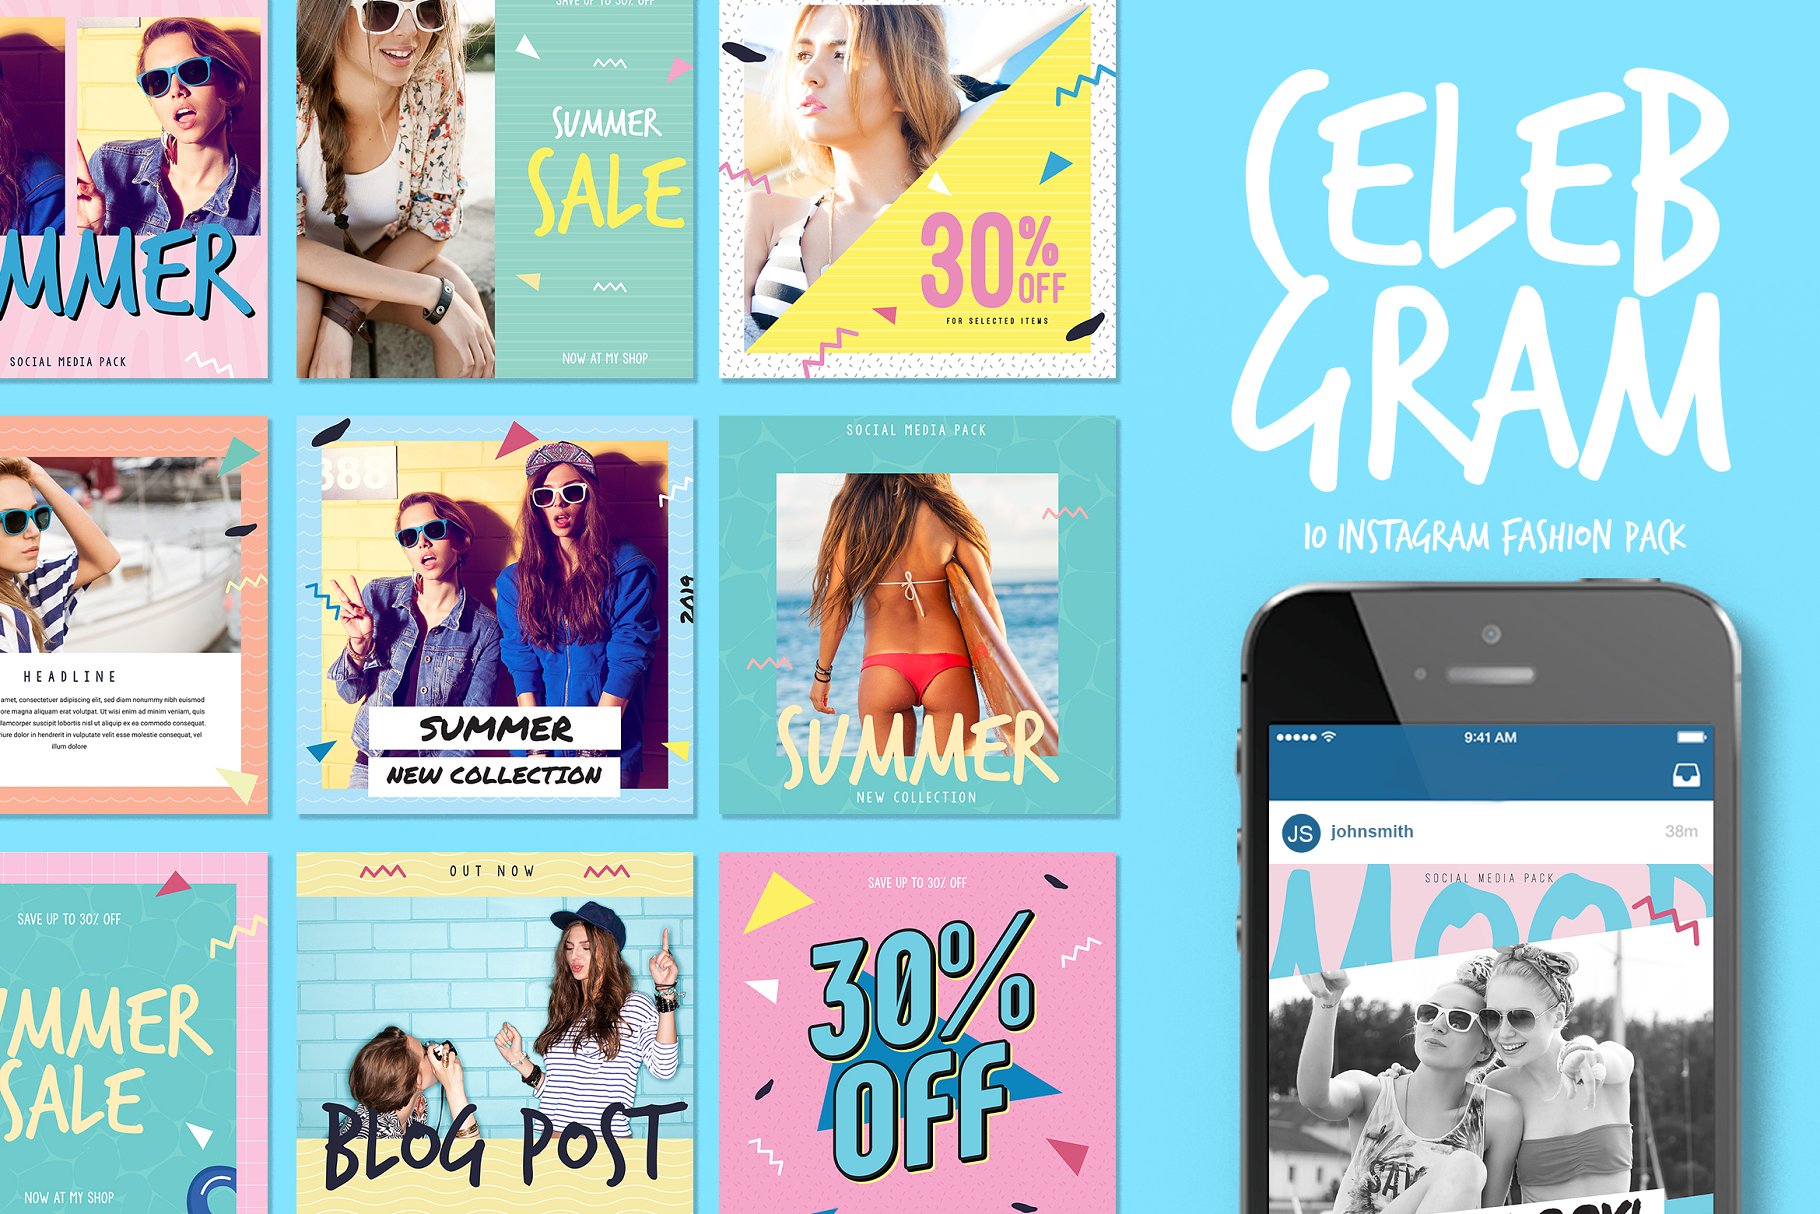 高品质时尚社交媒体INS帖子模板第一素材精选 Celebgram_Instagram Fashion Pack插图